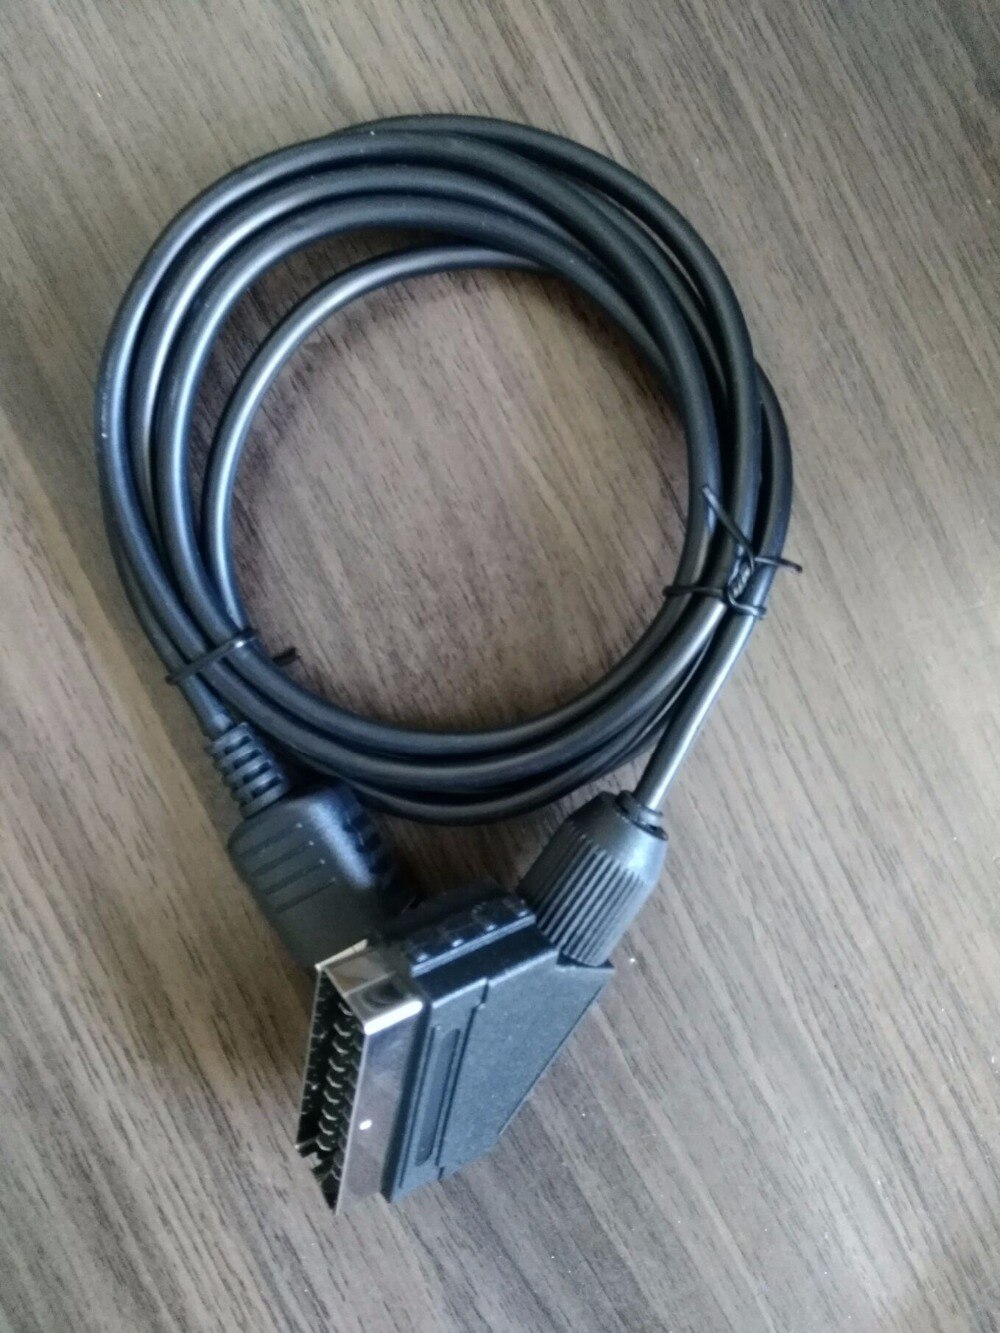 BUKIM Kabel Voor sega DC kabel cord Scart Kabel voor SEGA Dreamcast DC Black